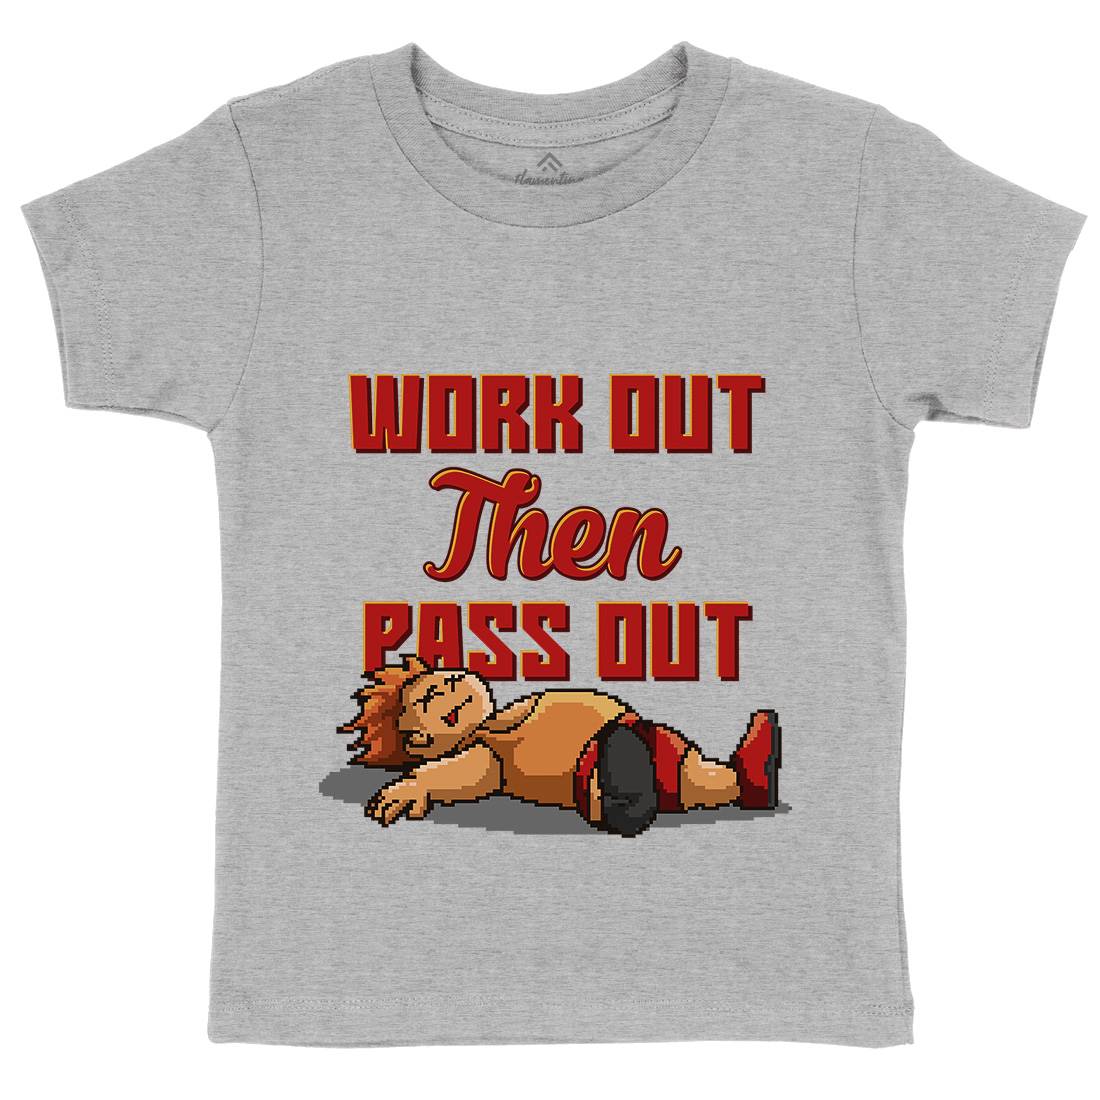 Work Out Then Pass Out Kids Organic Crew Neck T-Shirt Geek B981